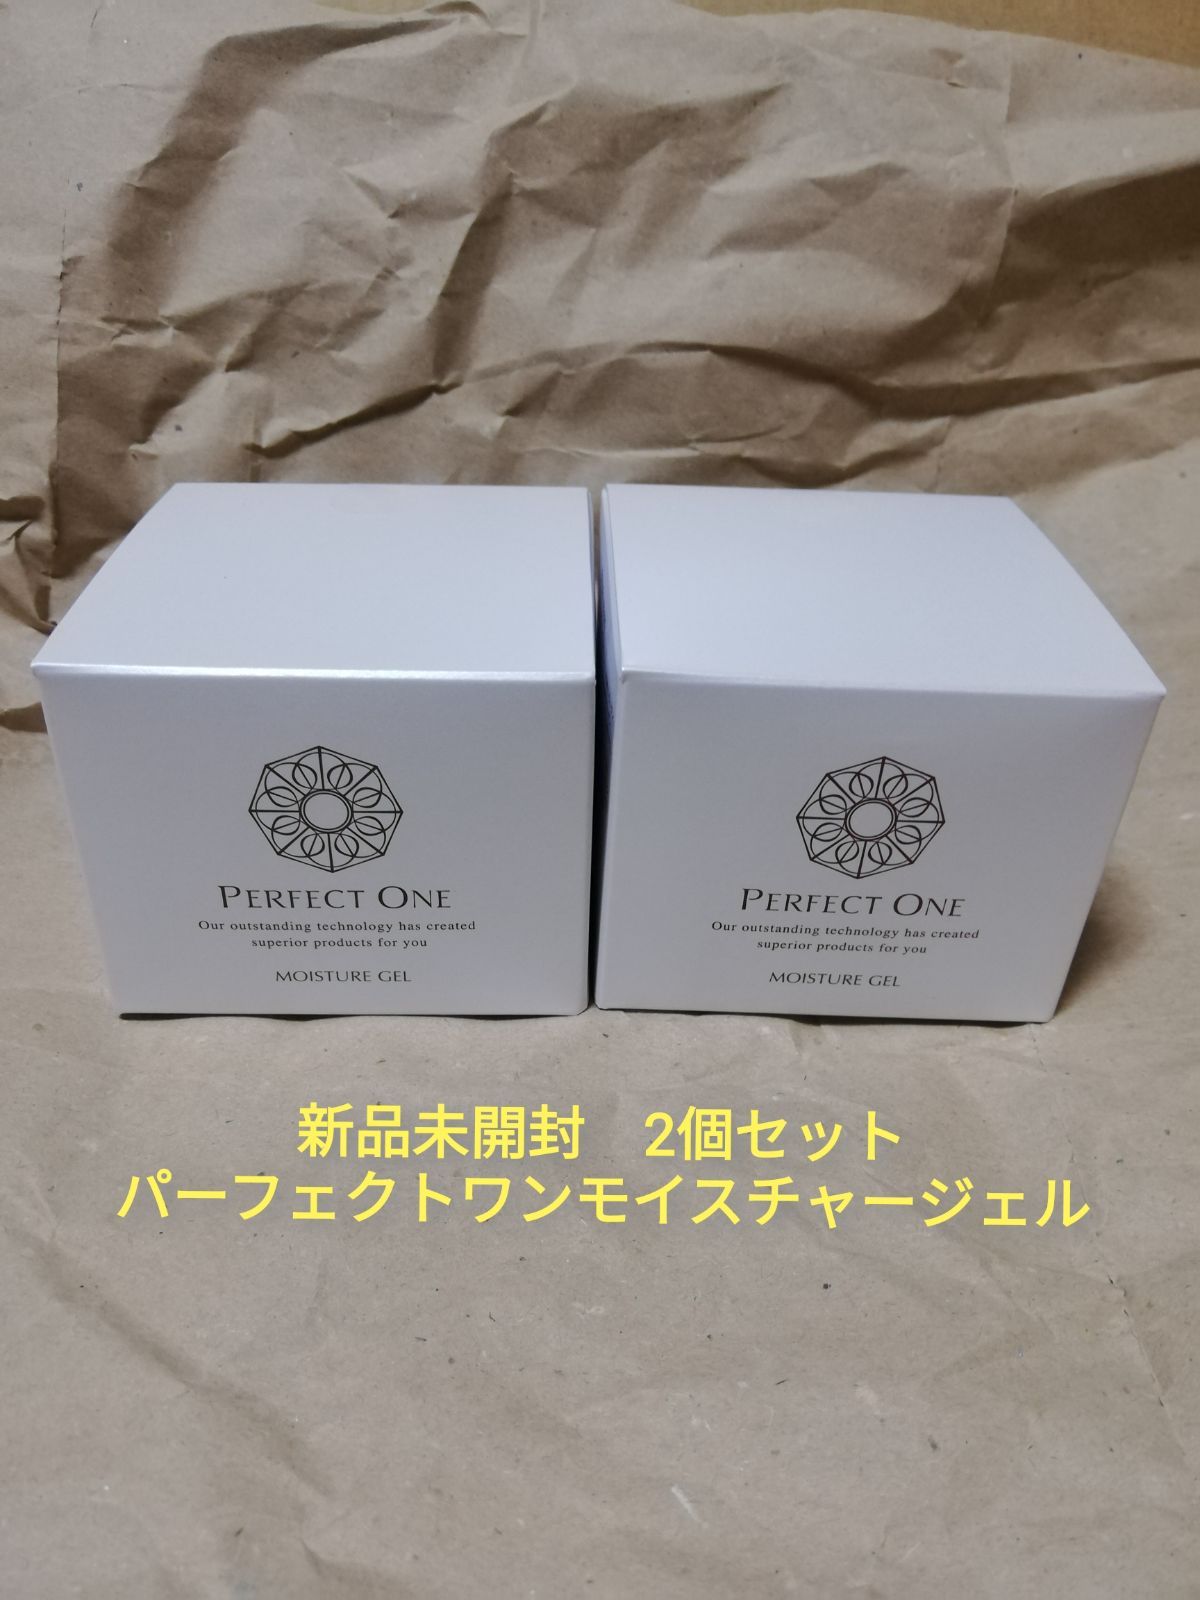 新日本製薬 パーフェクトワンモイスチャージェル 75g 2個セット - メルカリ